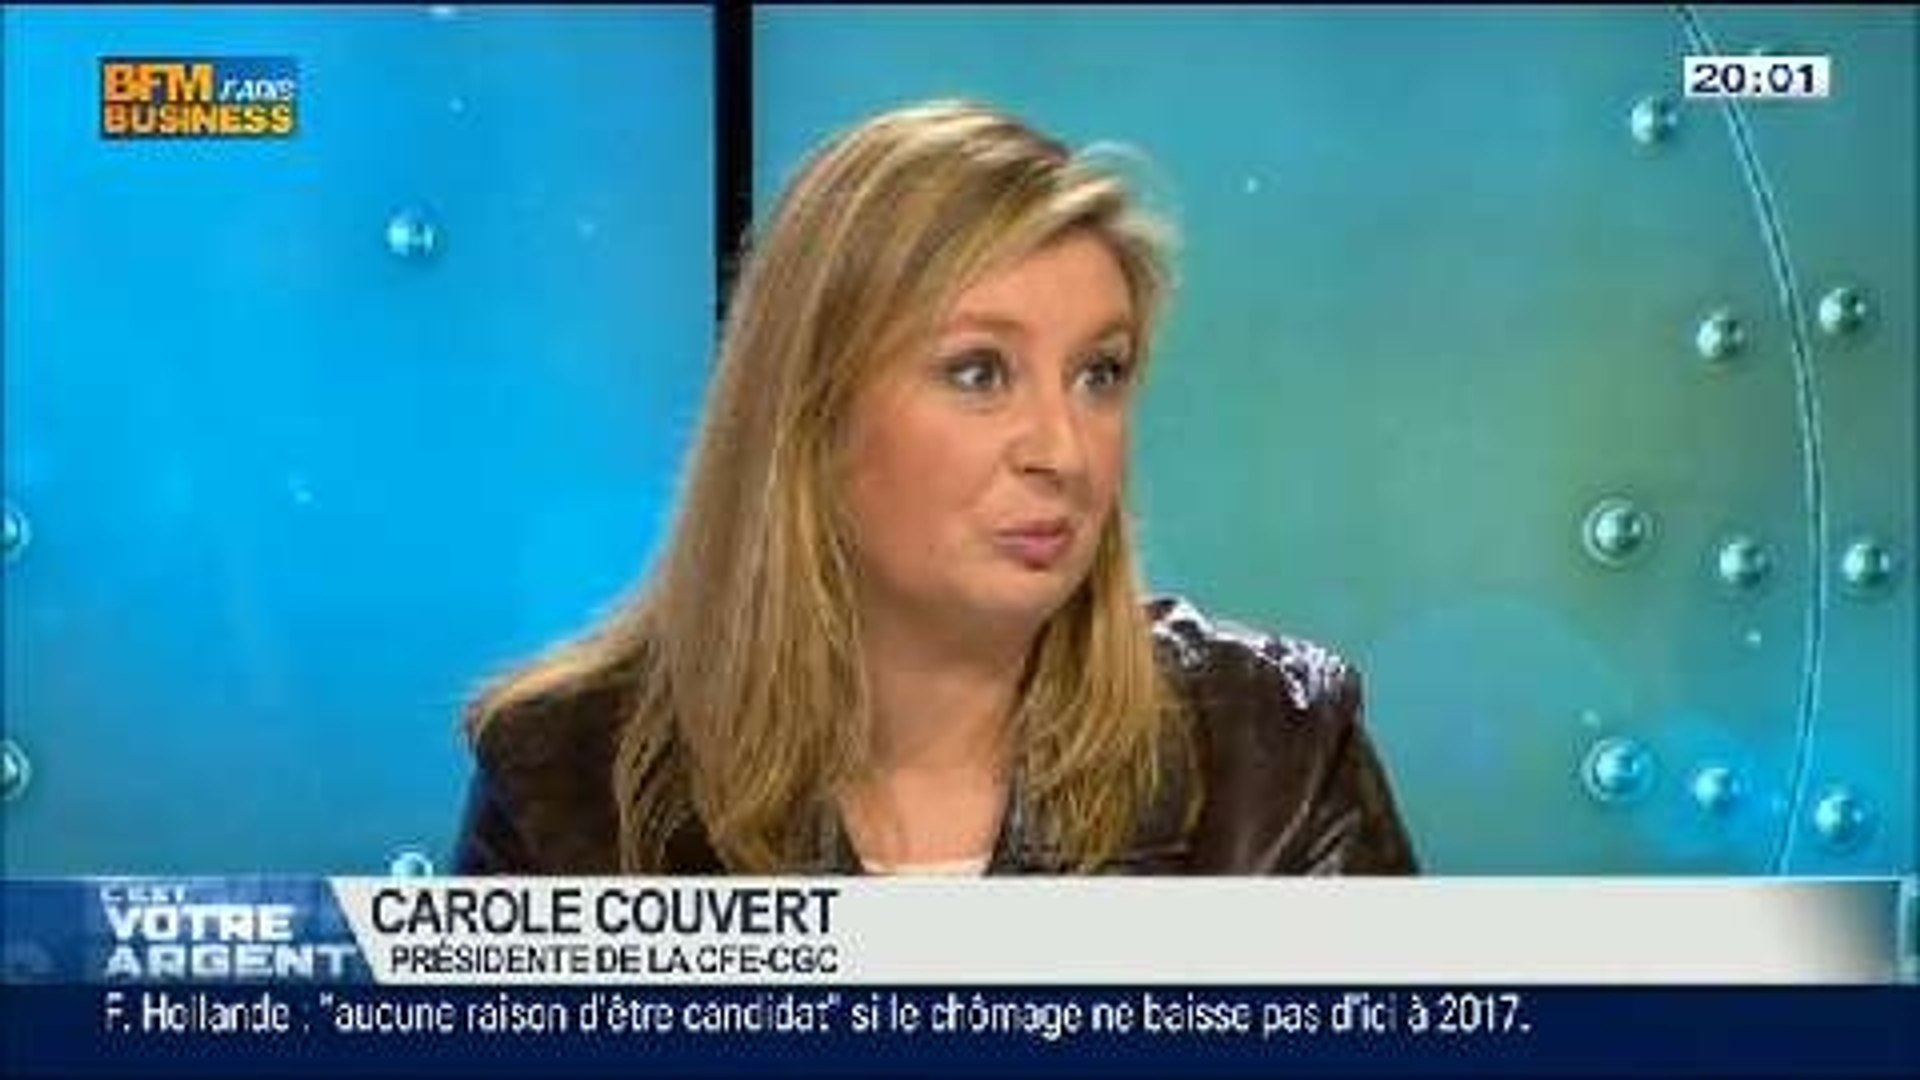 CFE-CGC: Carole Couvert, dans C'est votre argent - 18/04 3/5 - Vidéo  Dailymotion